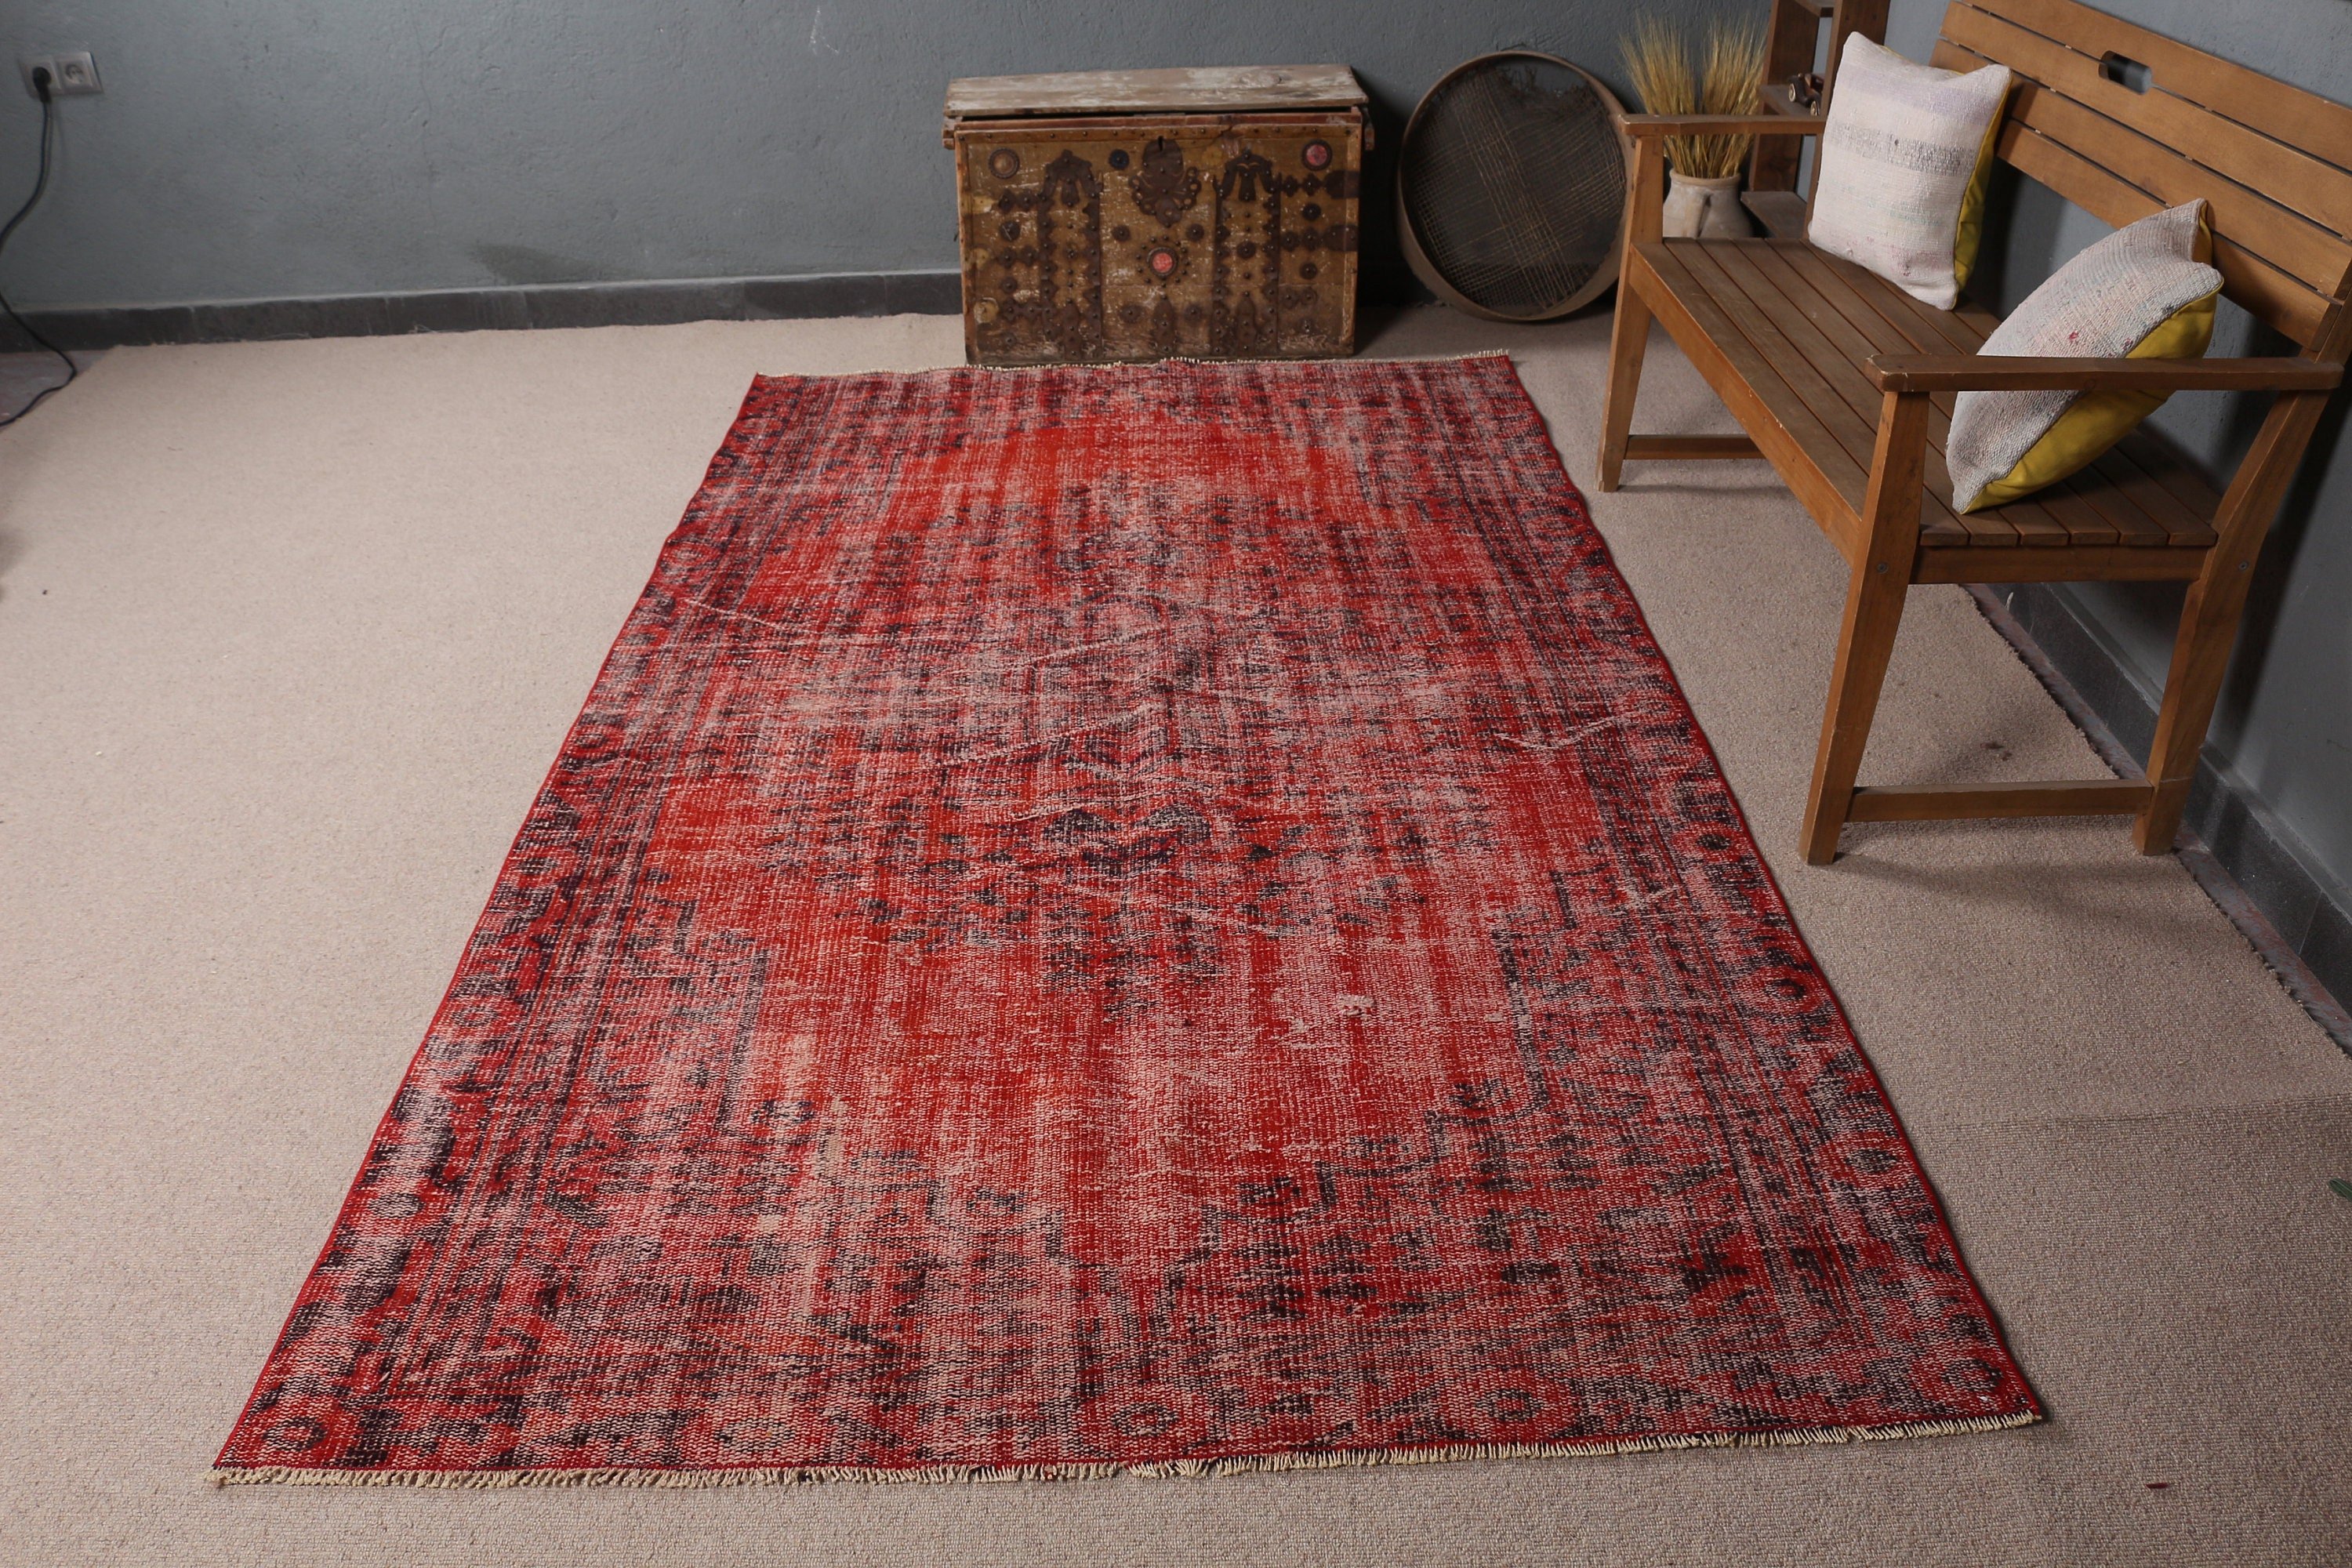 Living Room Rugs, Art Rug, Vintage Rugs, Red Moroccan Rug, Moroccan Rugs, Turkish Rug, Bedroom Rug, 5.2x9.1 ft Large Rugs, Rugs for Bedroom